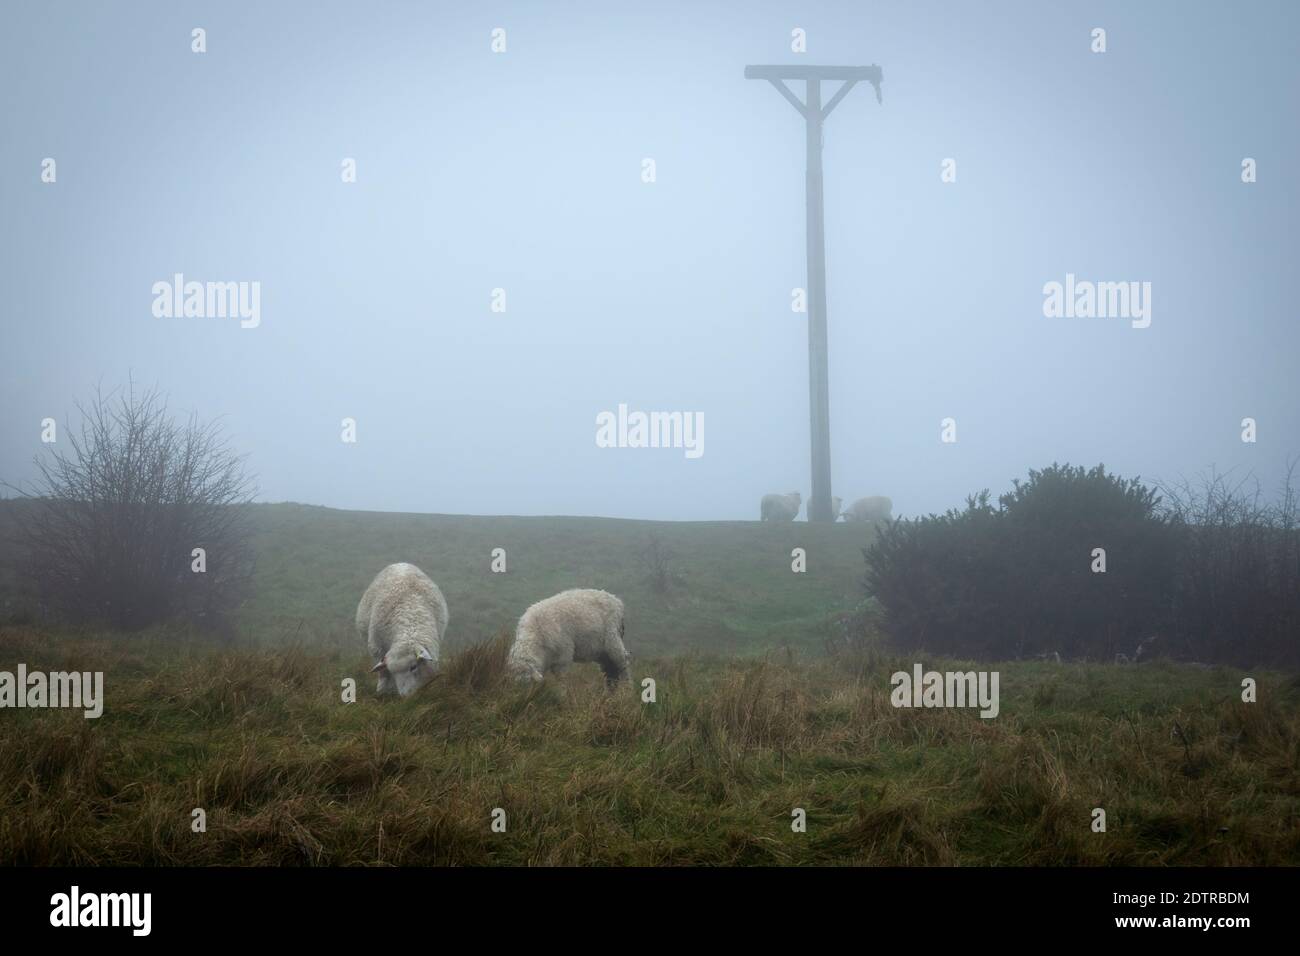 Combe gibbet au sommet de Inkpen Beacon dans le brouillard avec des moutons sur Gallets en bas, Inkpen, Berkshire, Angleterre, Royaume-Uni, Europe Banque D'Images